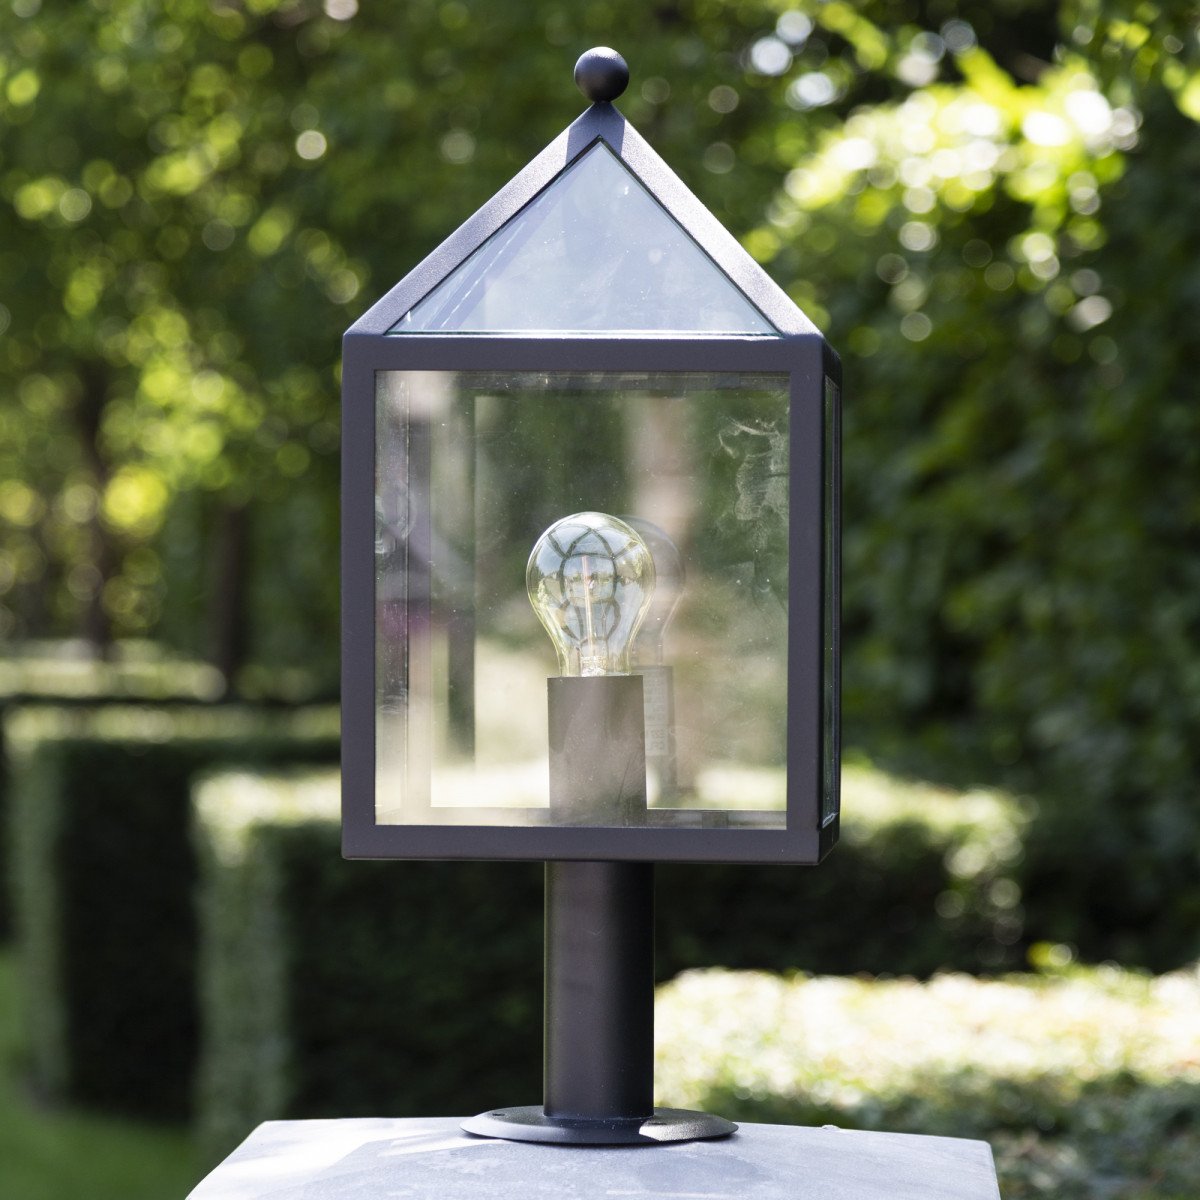 Zwarte buitenlamp staand model tuinlamp, zwart RVS frame, grote heldere glazen model Bloemendaal